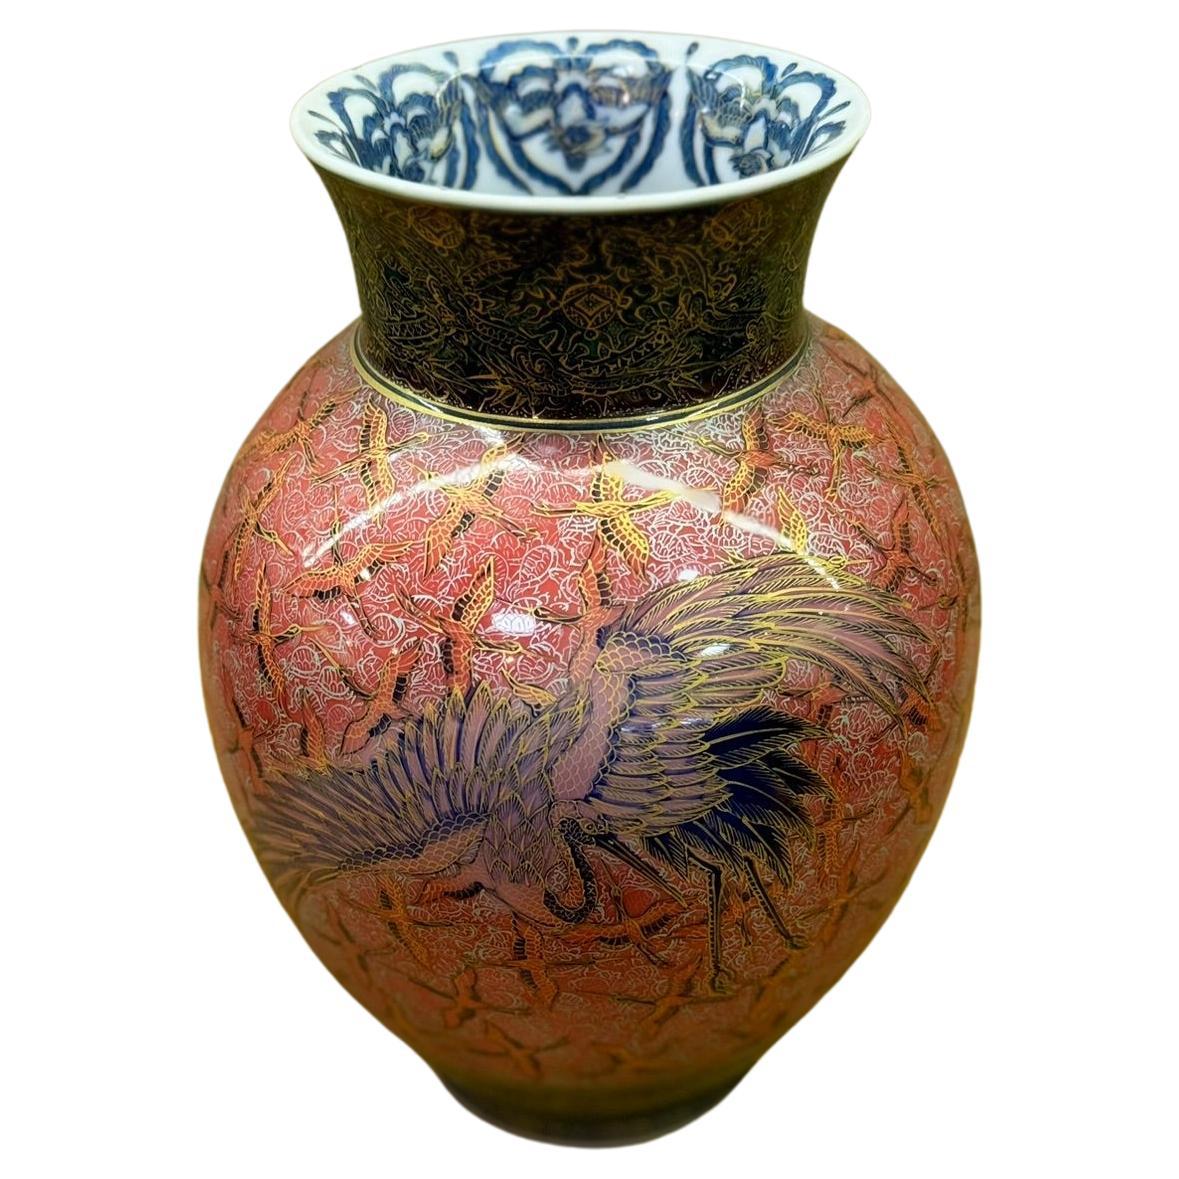 Vase contemporain japonais en porcelaine rouge, bleu, noir et or, réalisé par un maître artiste, 2 en vente